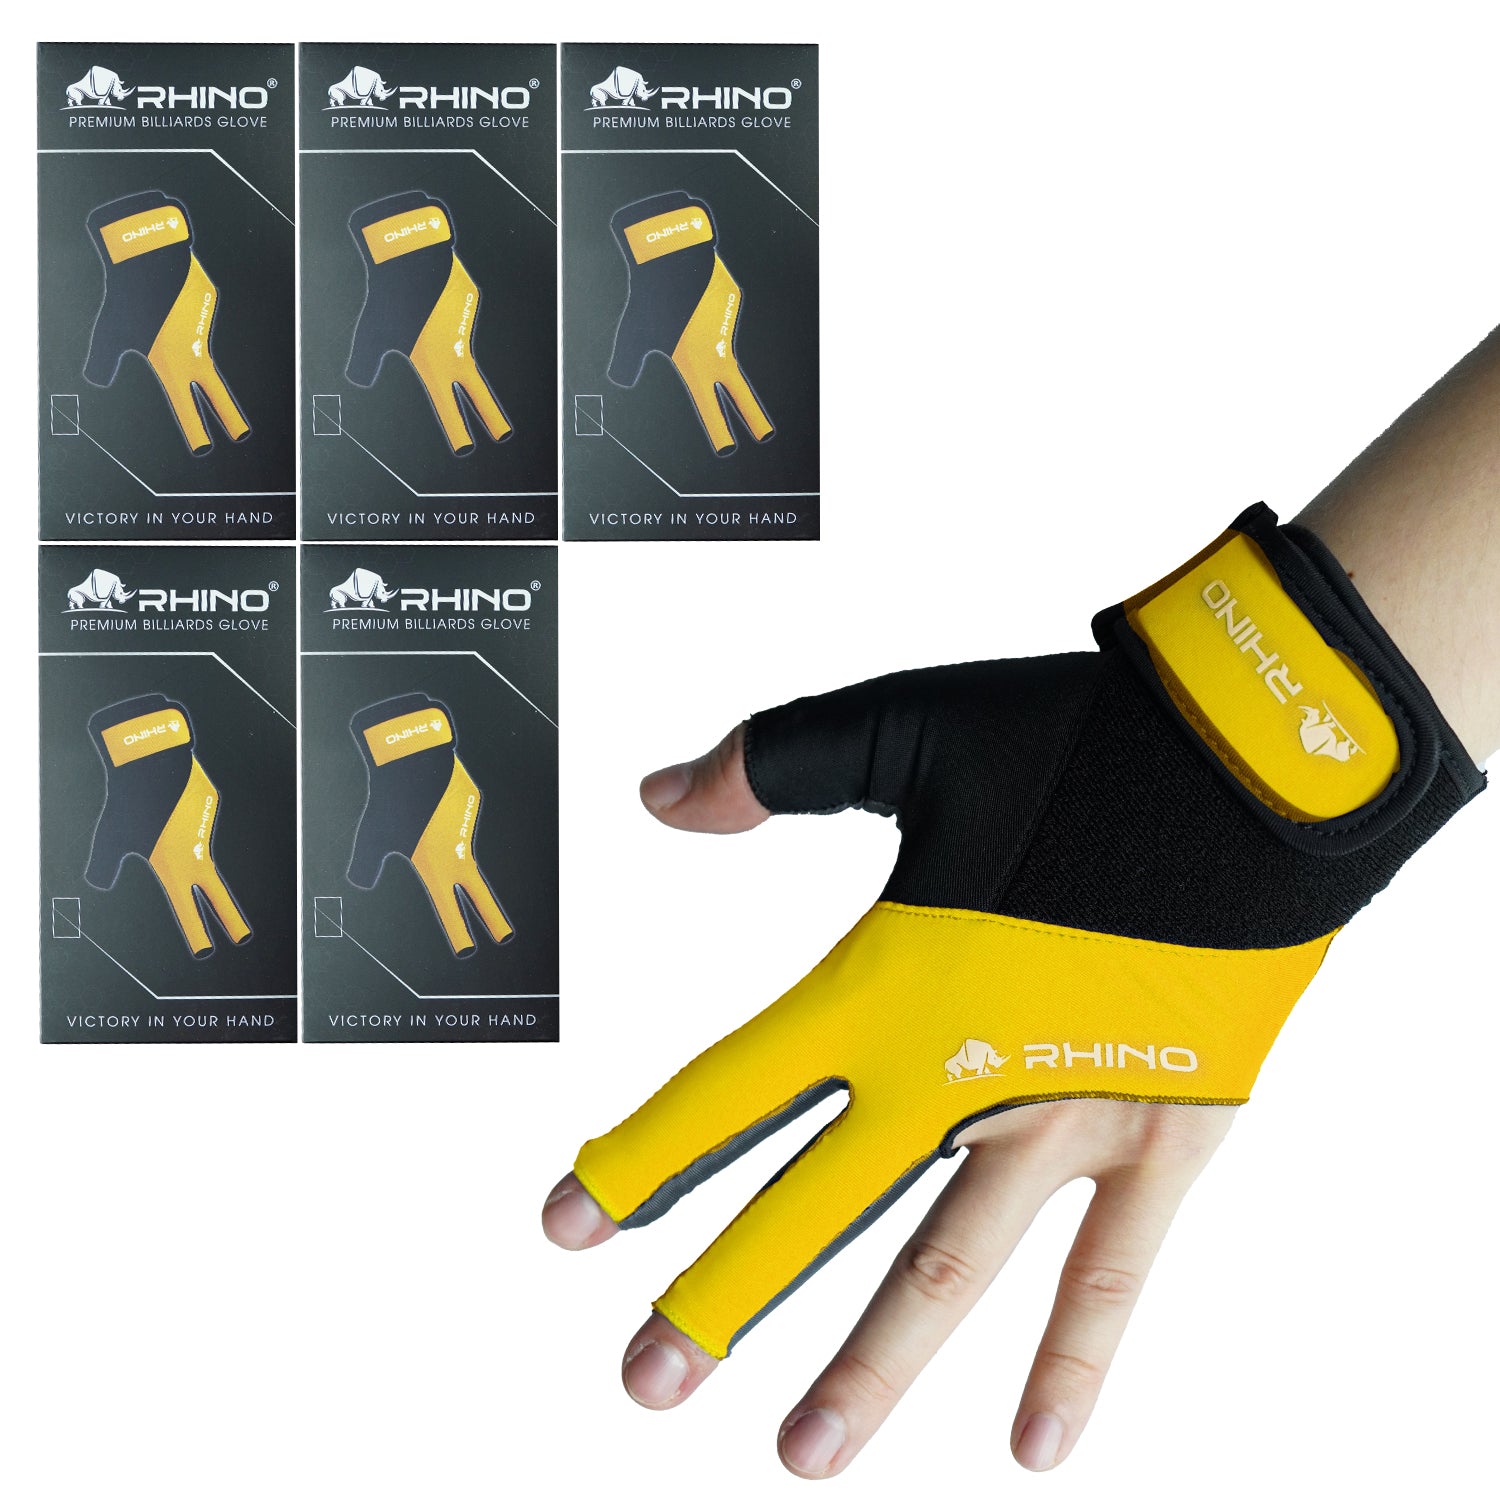 RHINO Billiards Glove Left Hand - Yellow